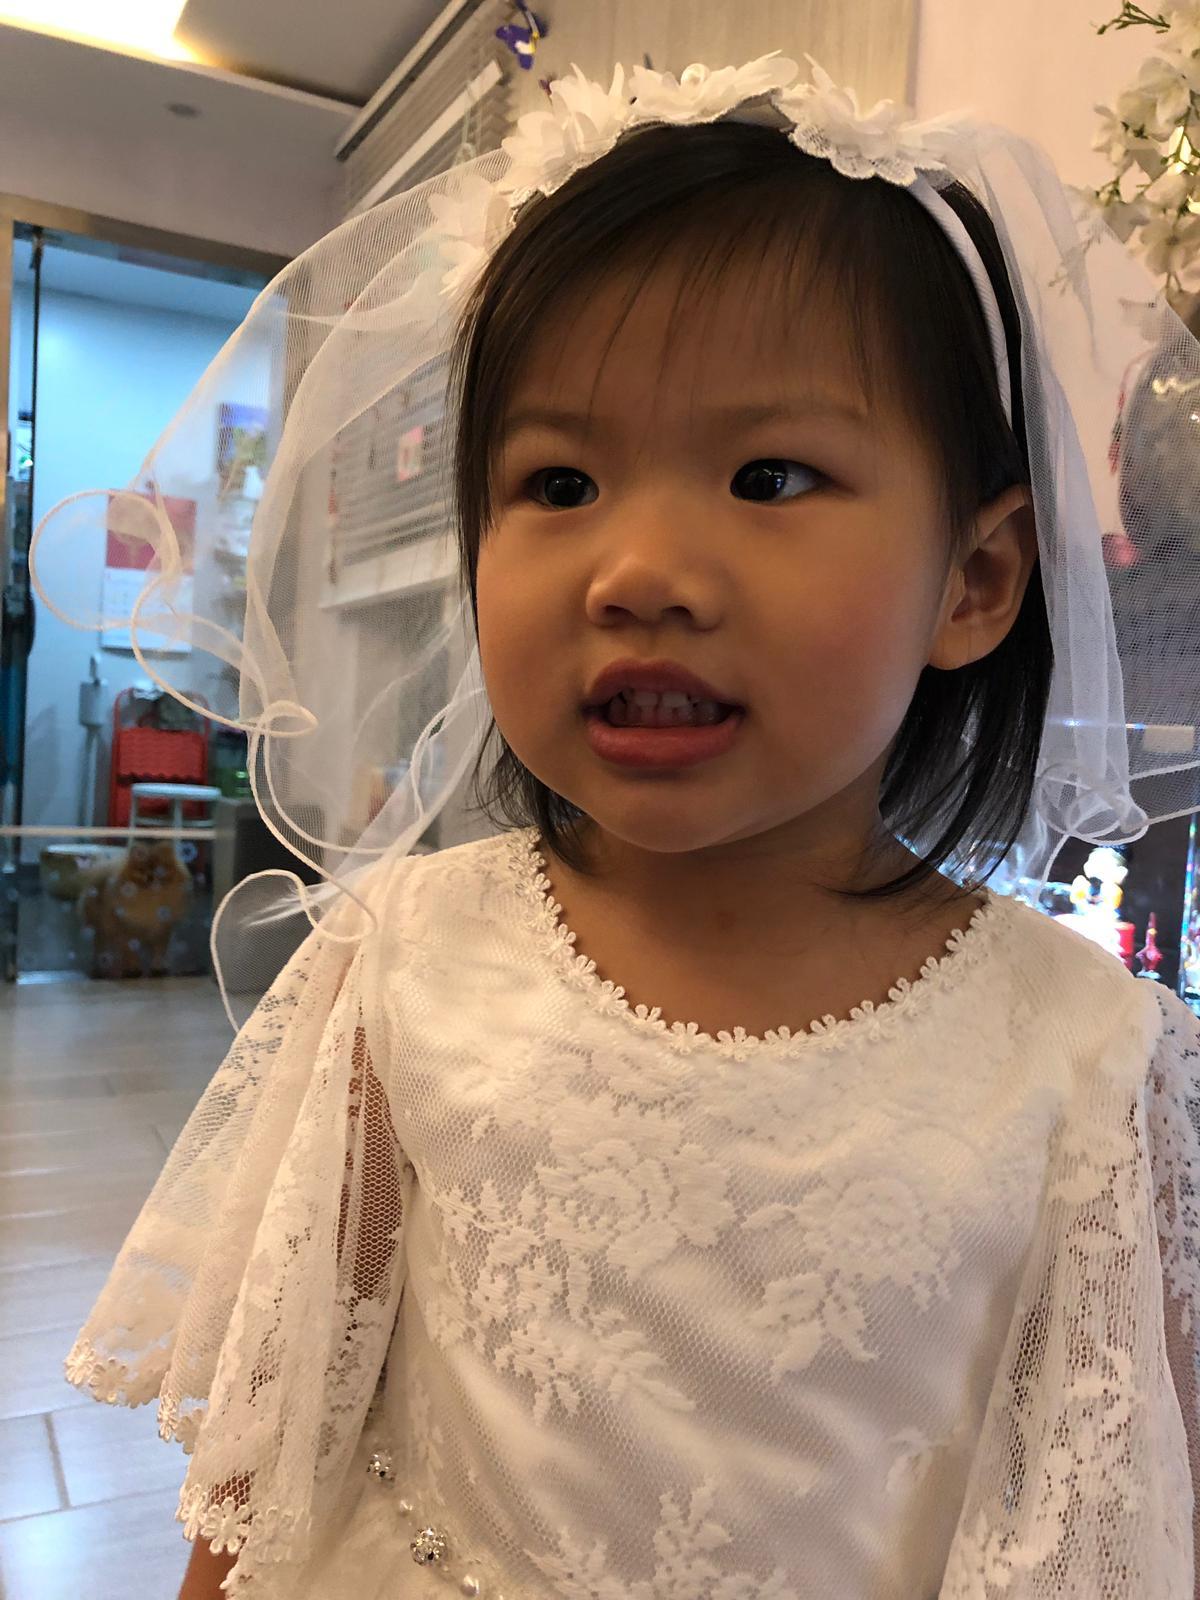 Queeny Ng婚禮統籌師工作紀錄: 西式婚禮統籌 - 可愛的小花女